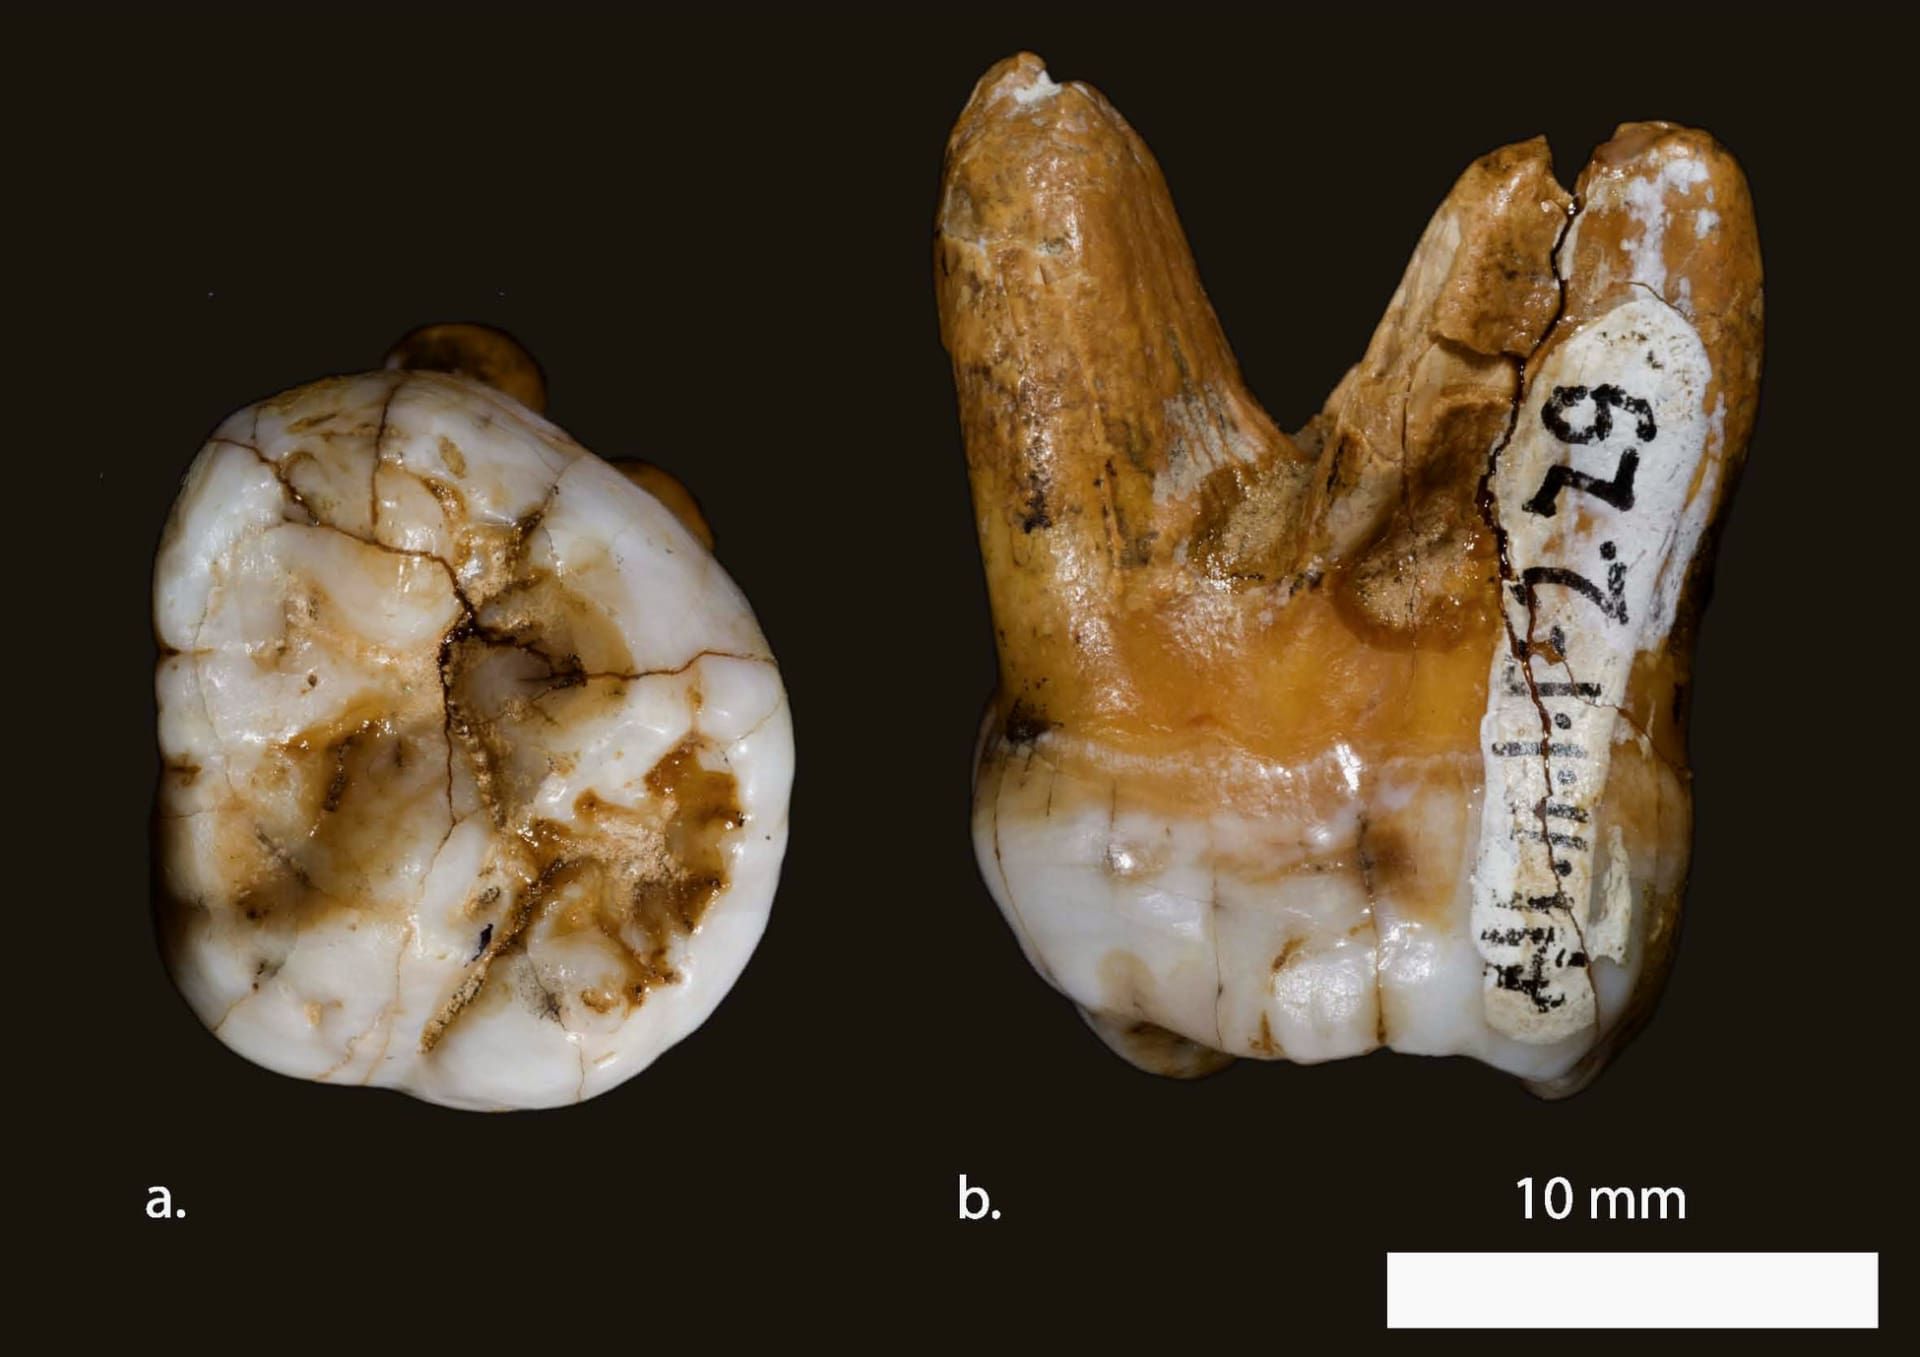 دندان مولر یا دندان آسیاب بزرگ متعلق به یک دنیسووا